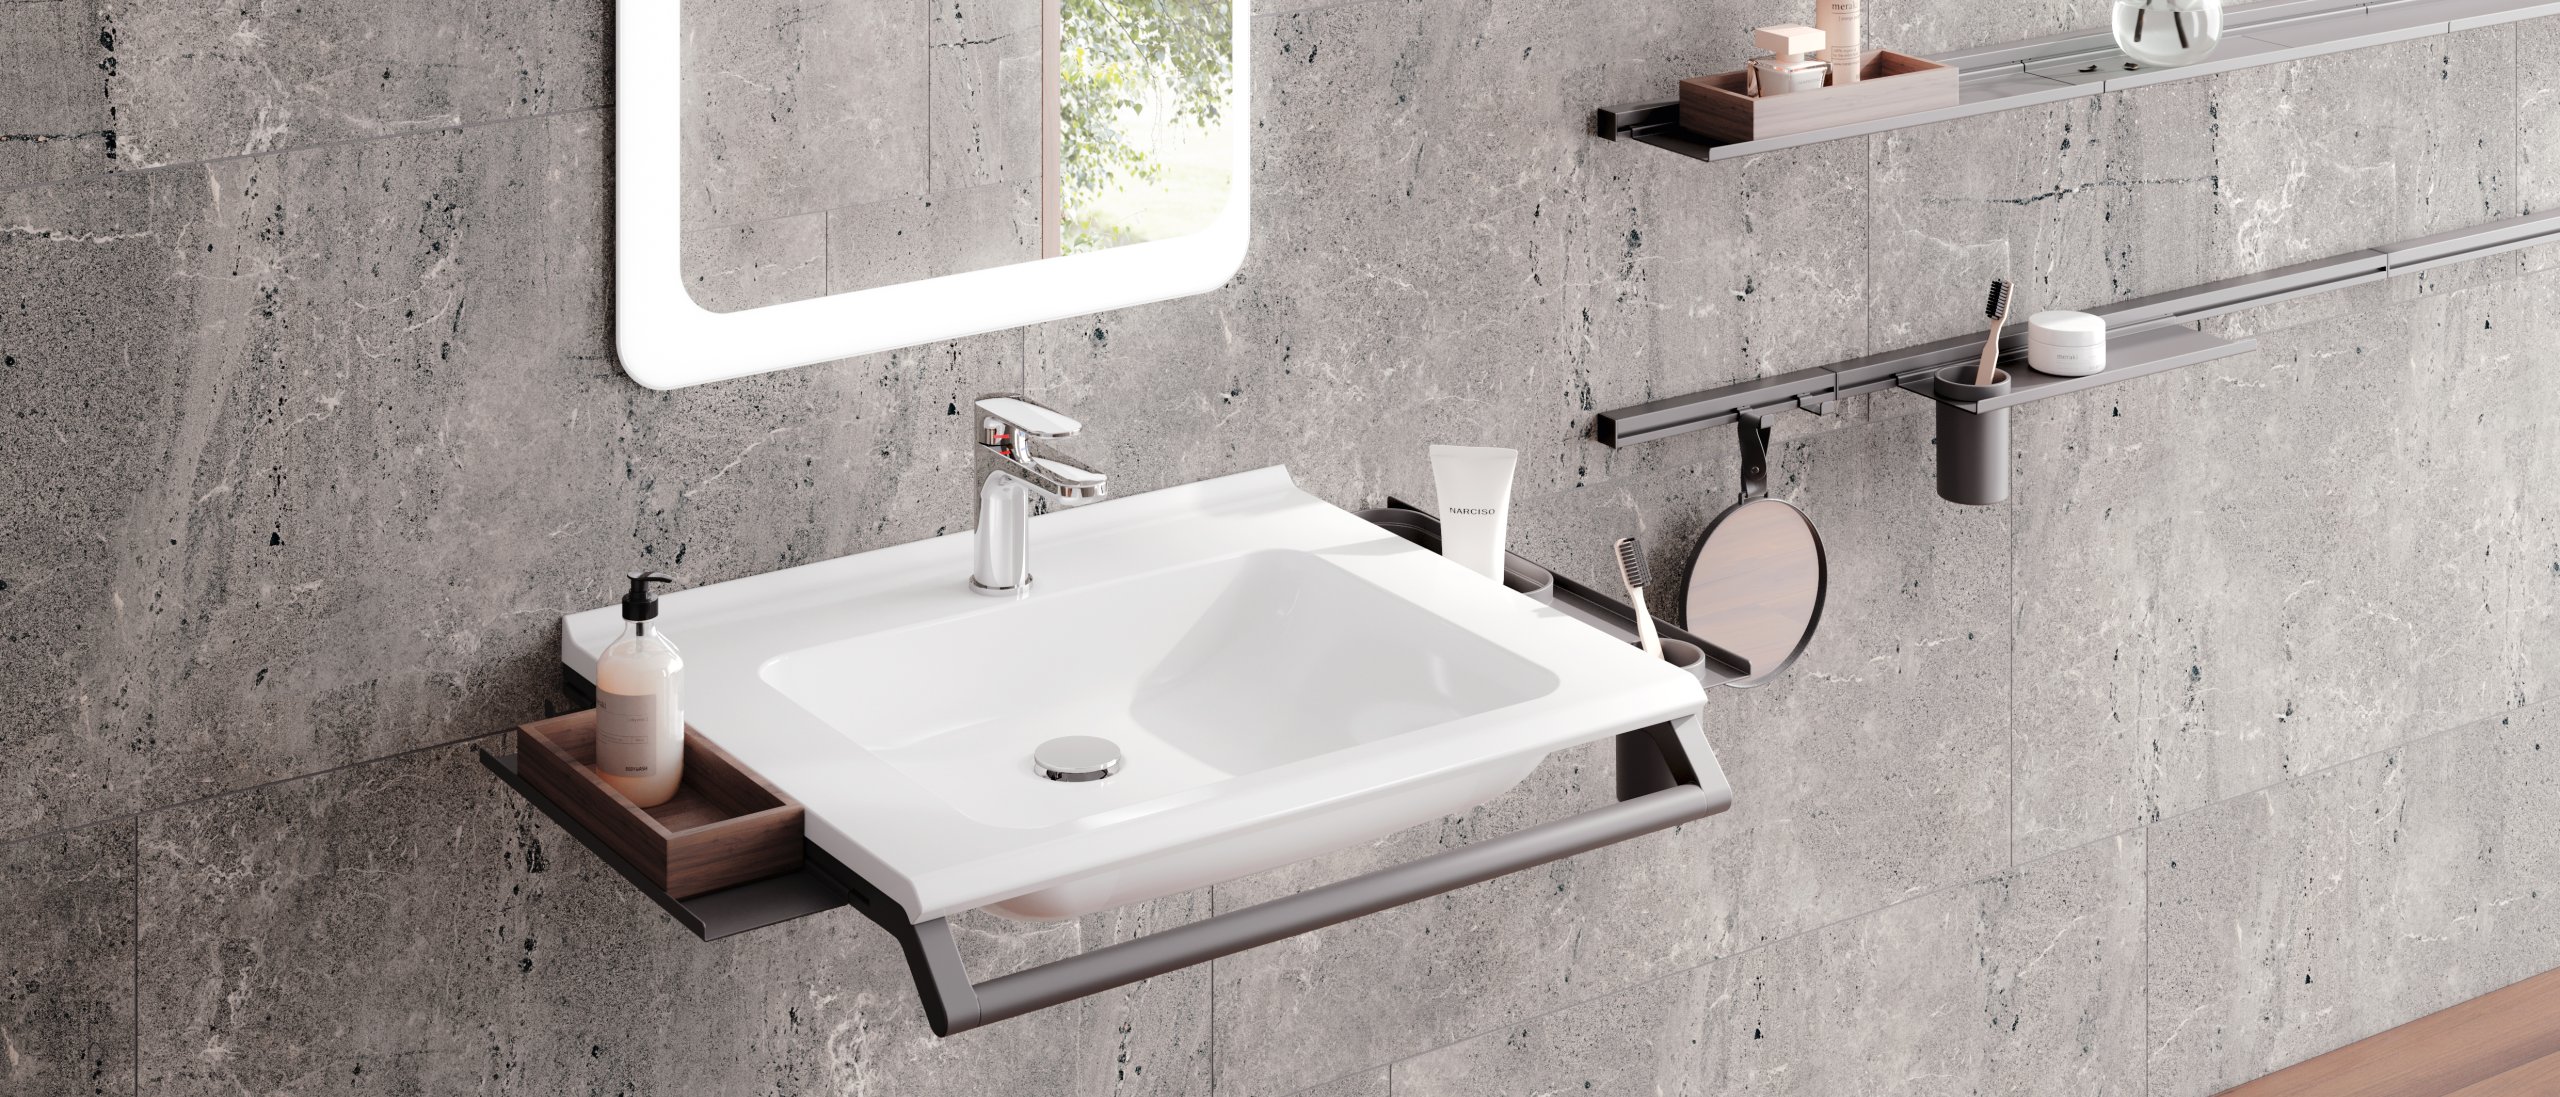 Modular washbasin with grab rail and shelves for bathroom utensils in dark grey matt stainless steel